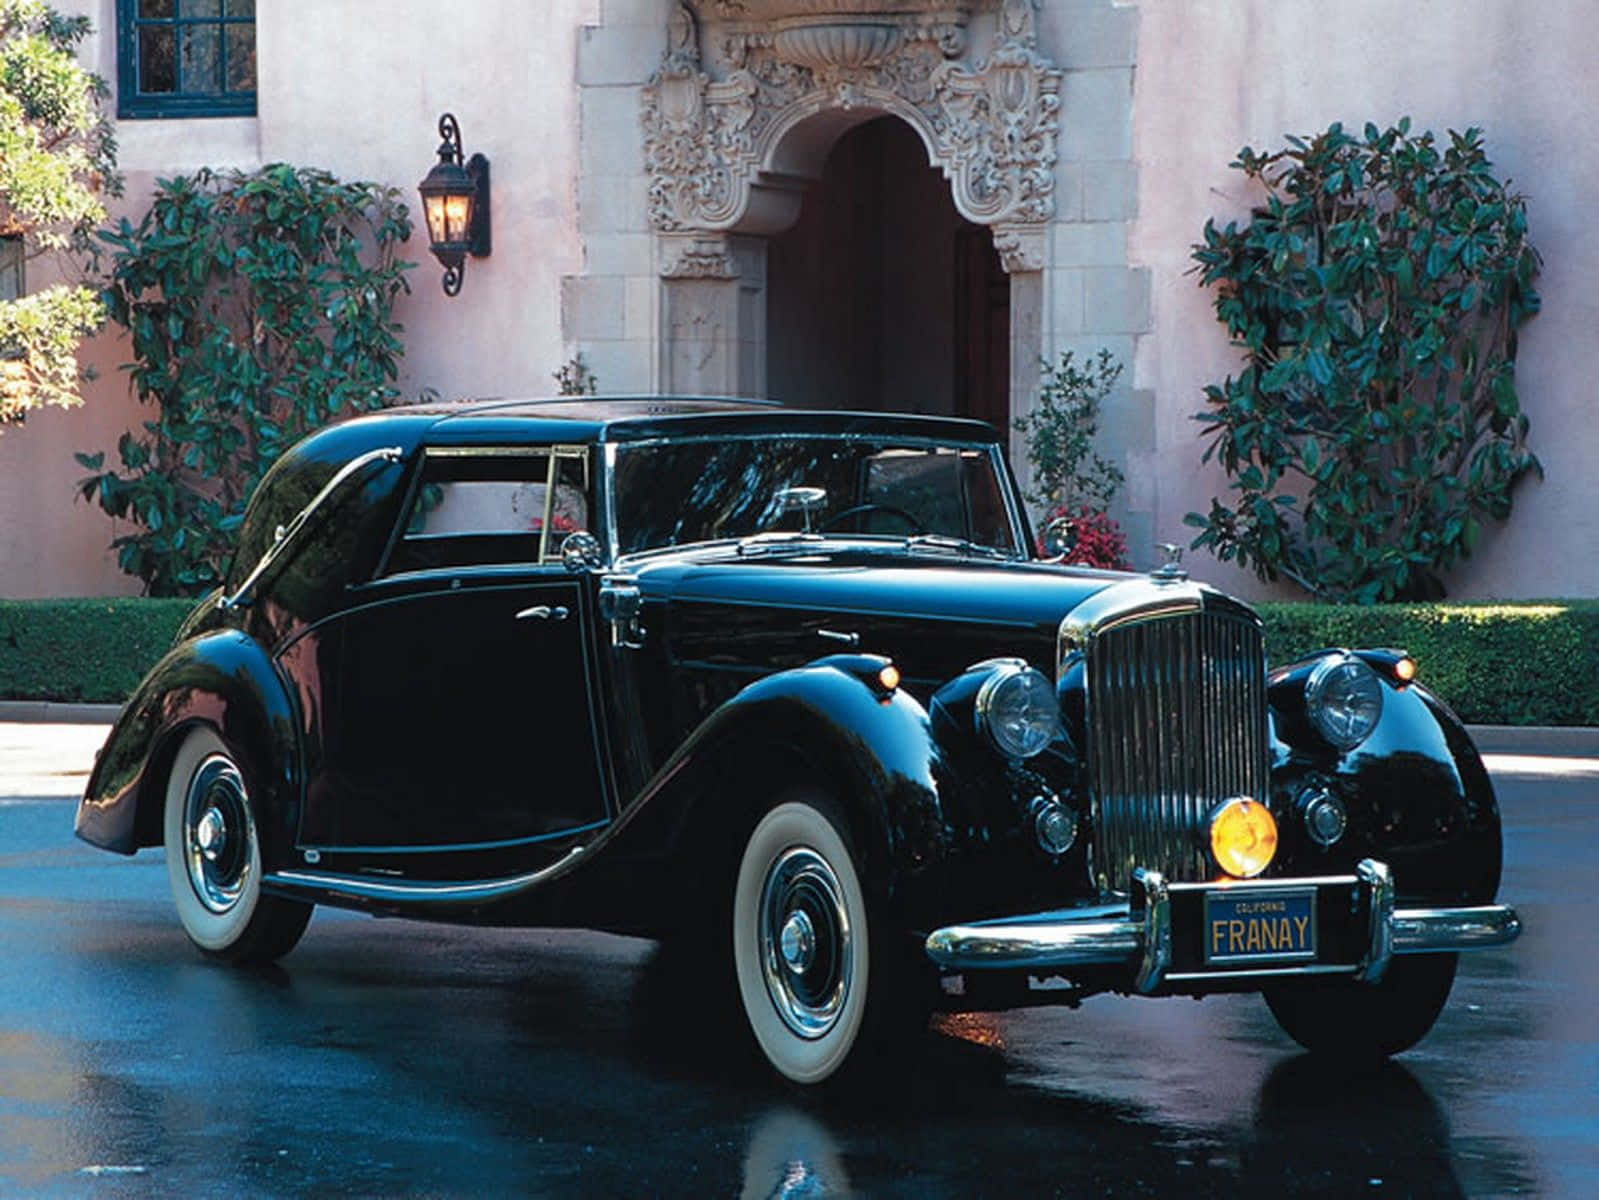 Refined Luxury - The Bentley Bentayga